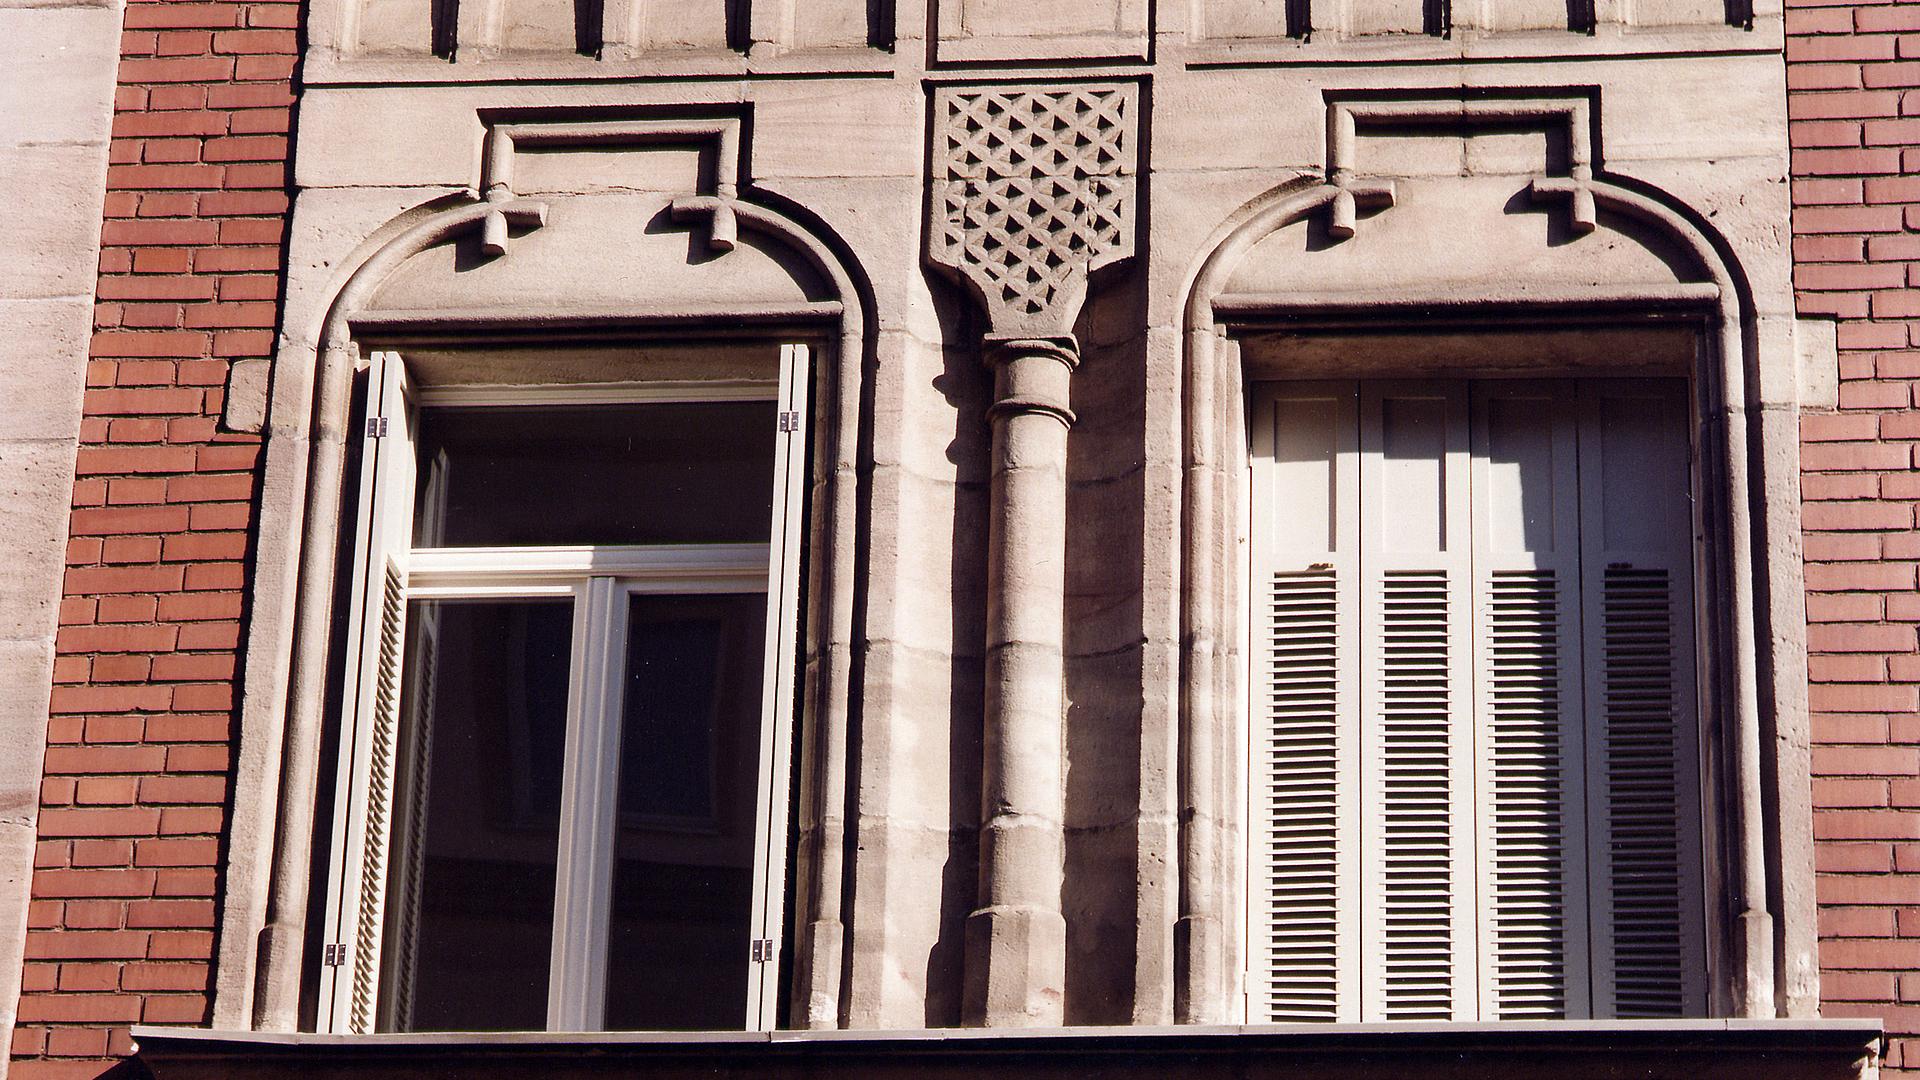 Bild: Einbau von Fenstern mit Faltladen (=mehrteiliger Fensterladen) aus Alu/Holz (Eigenentwurf)